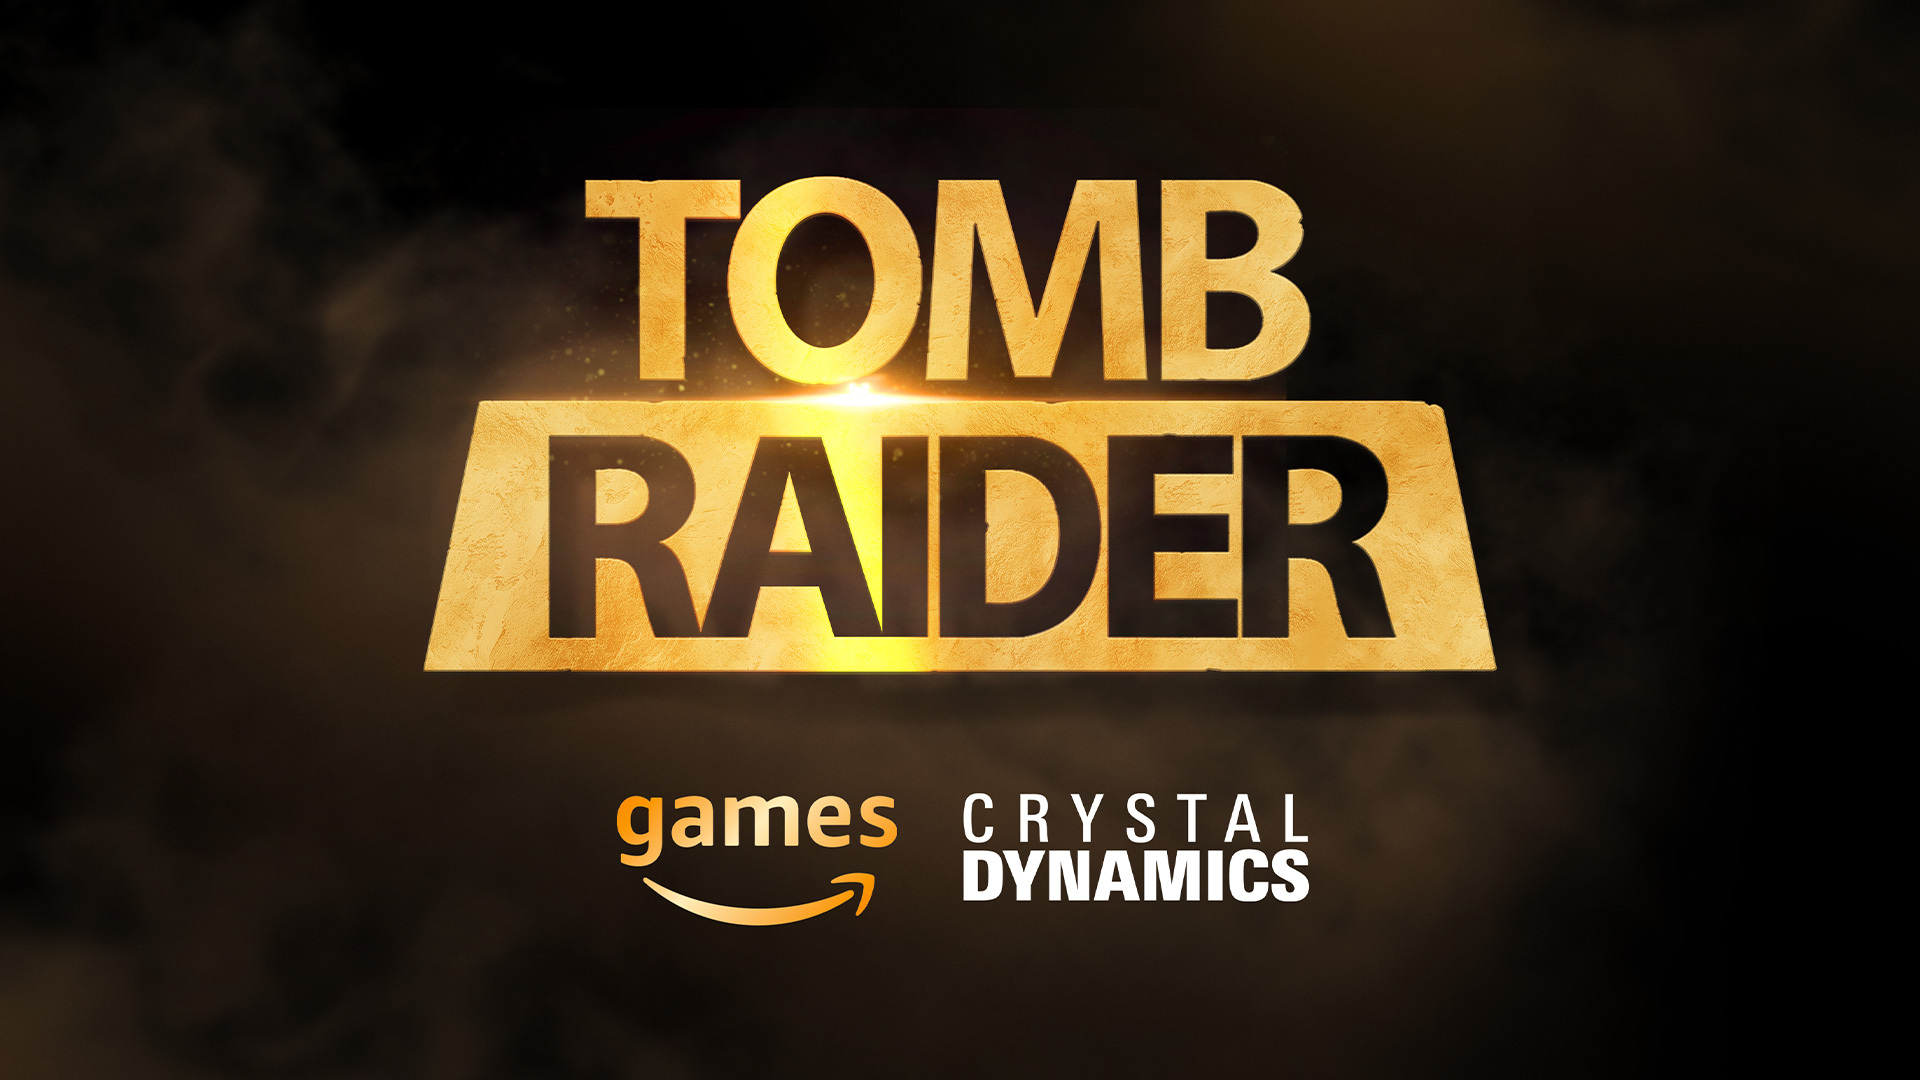 Tomb Raider já vendeu 88 milhões de cópias desde 1996